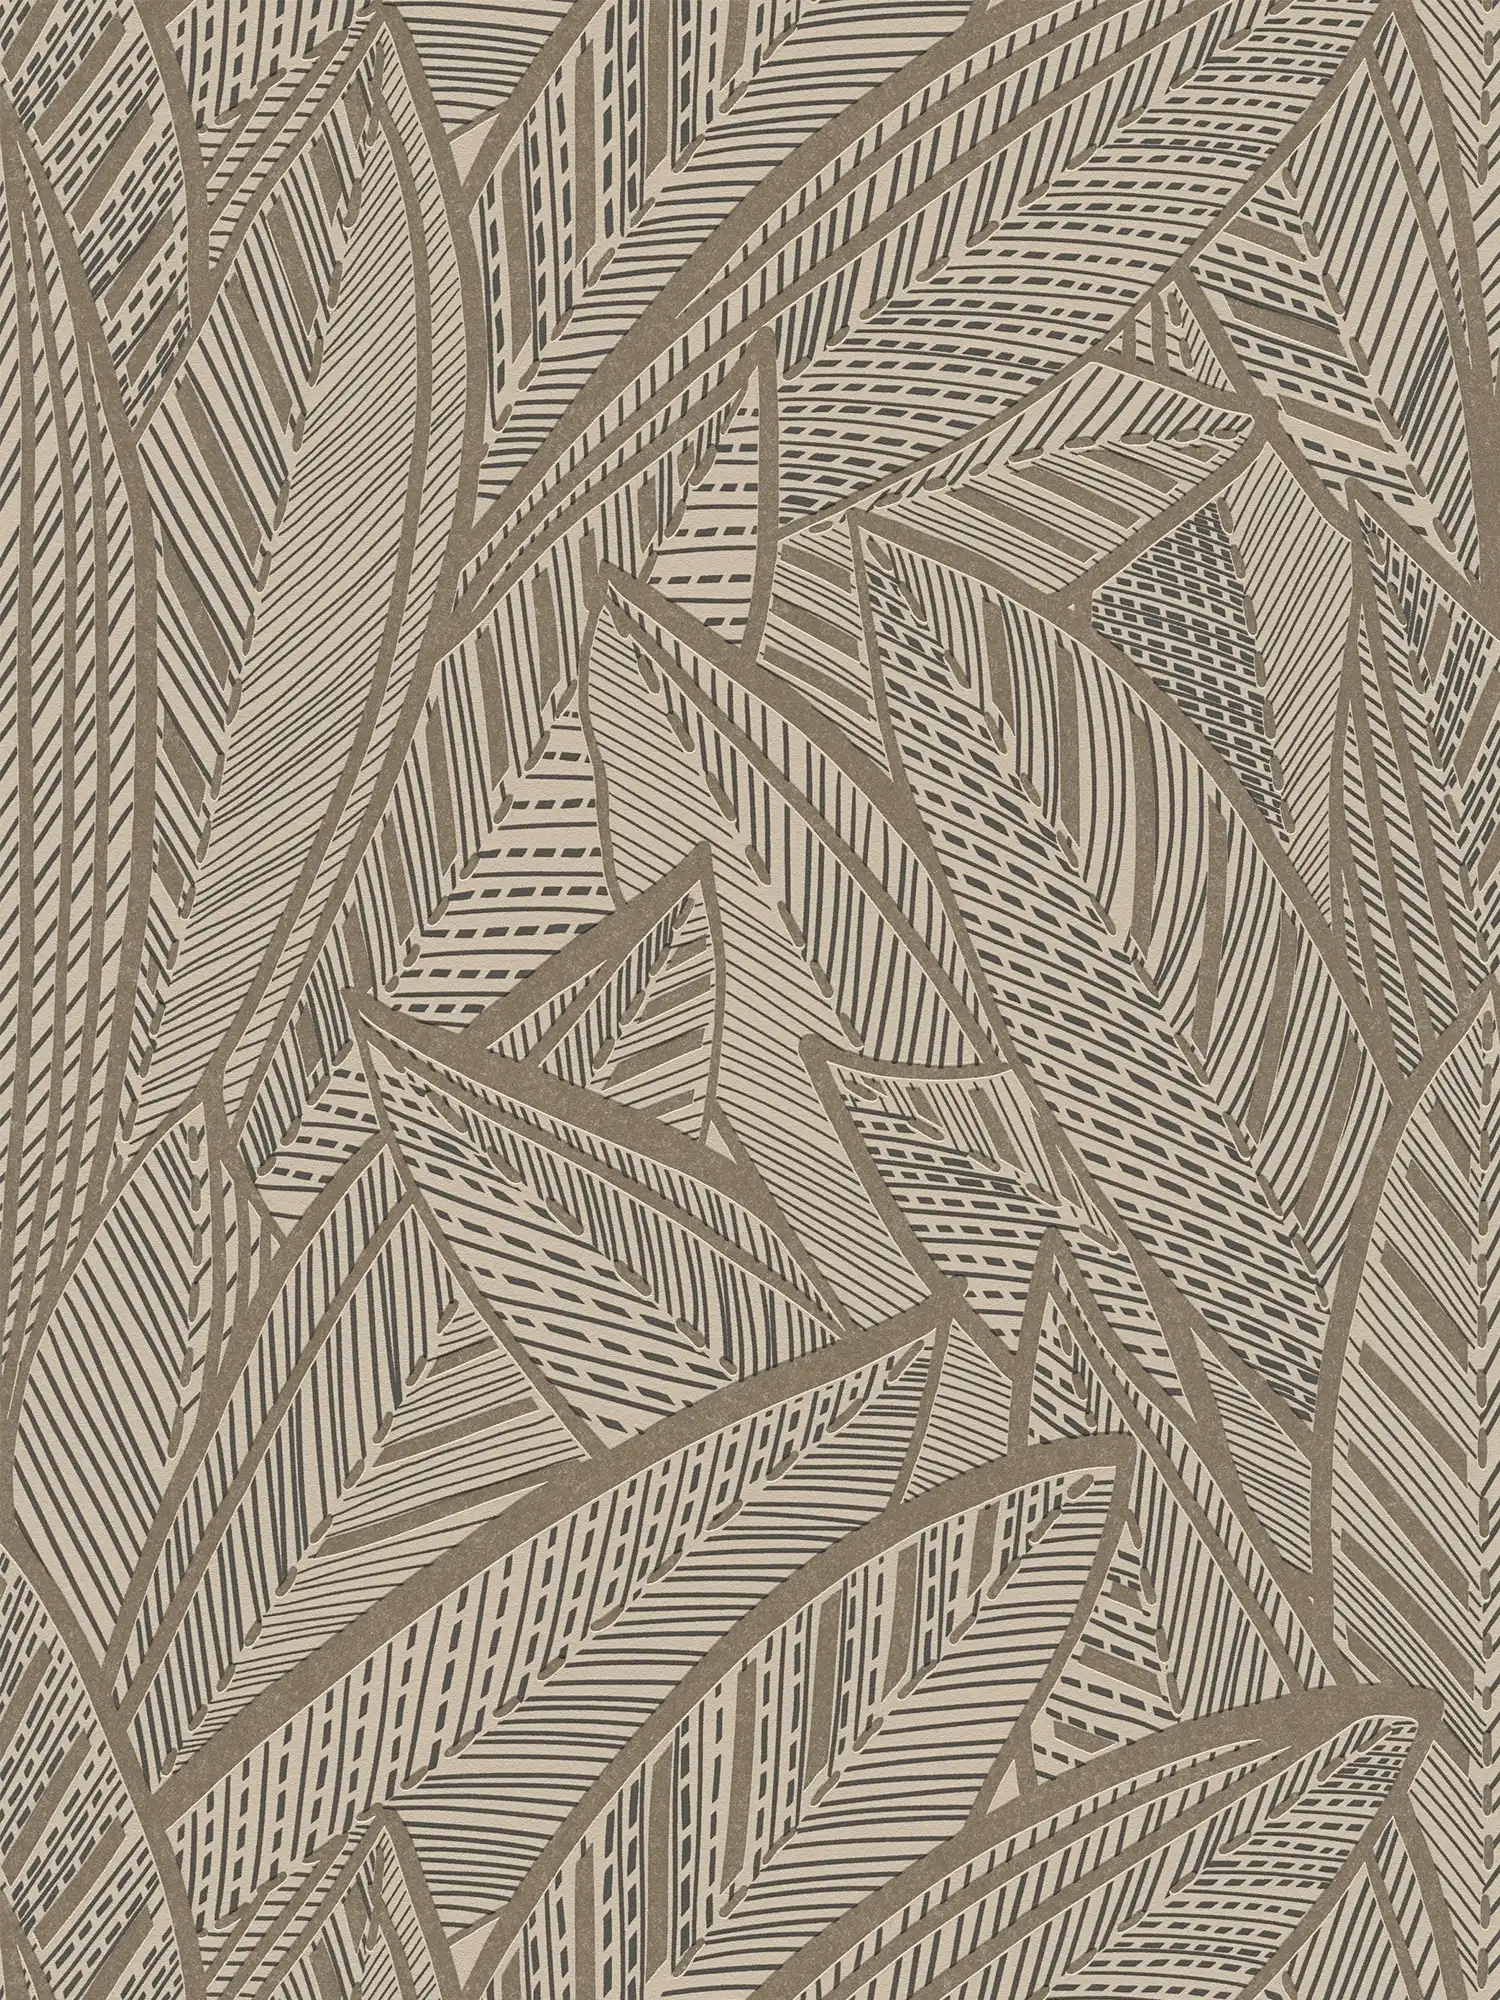 Dschungel Vliestapete mit Palmenblättern und leichten Glanzeffekten – Metallic, Schwarz
